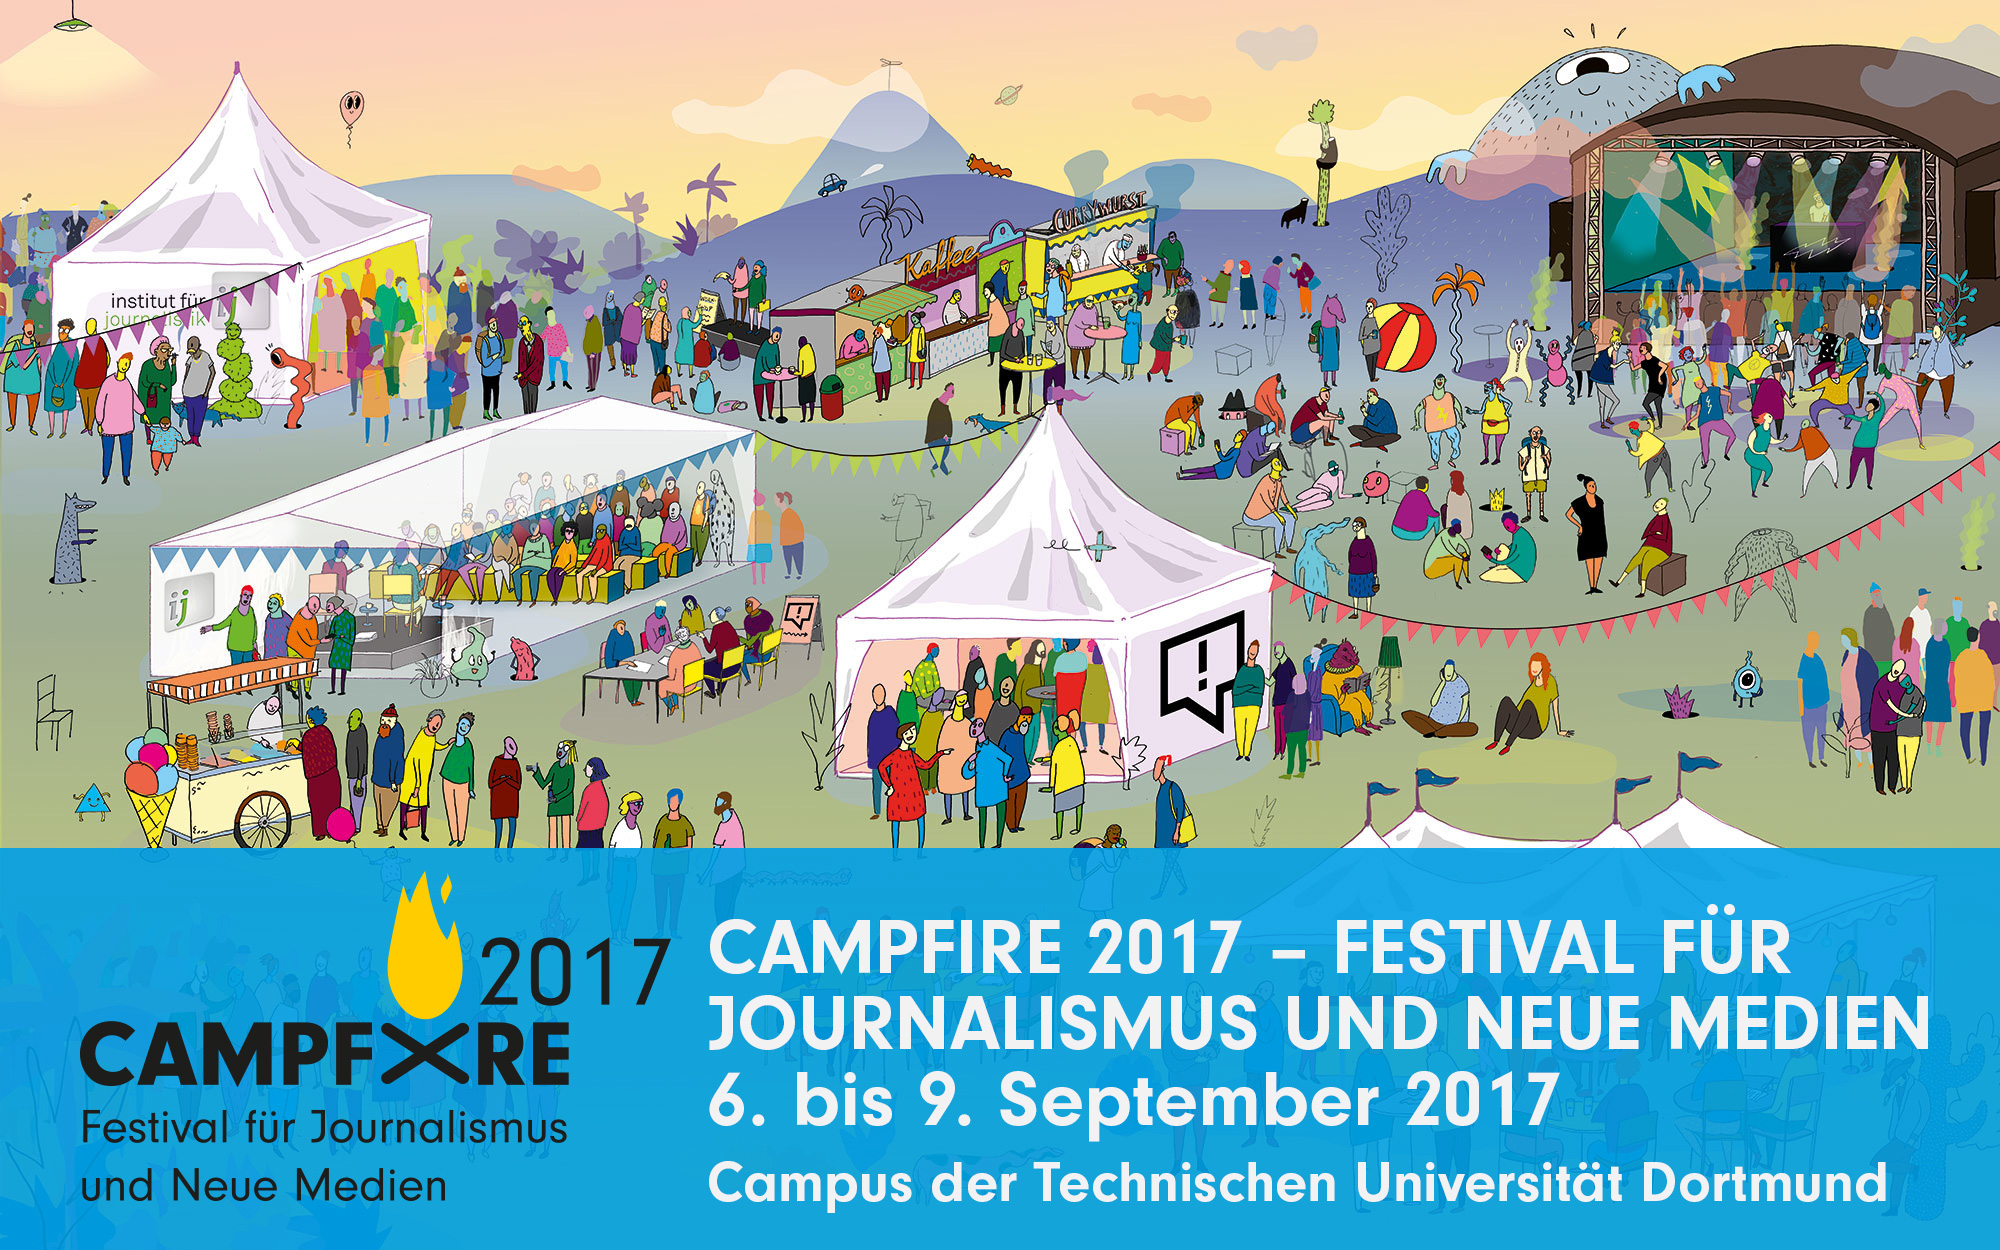 Campfire 2017 - Festival für Journalismus und neue Medien